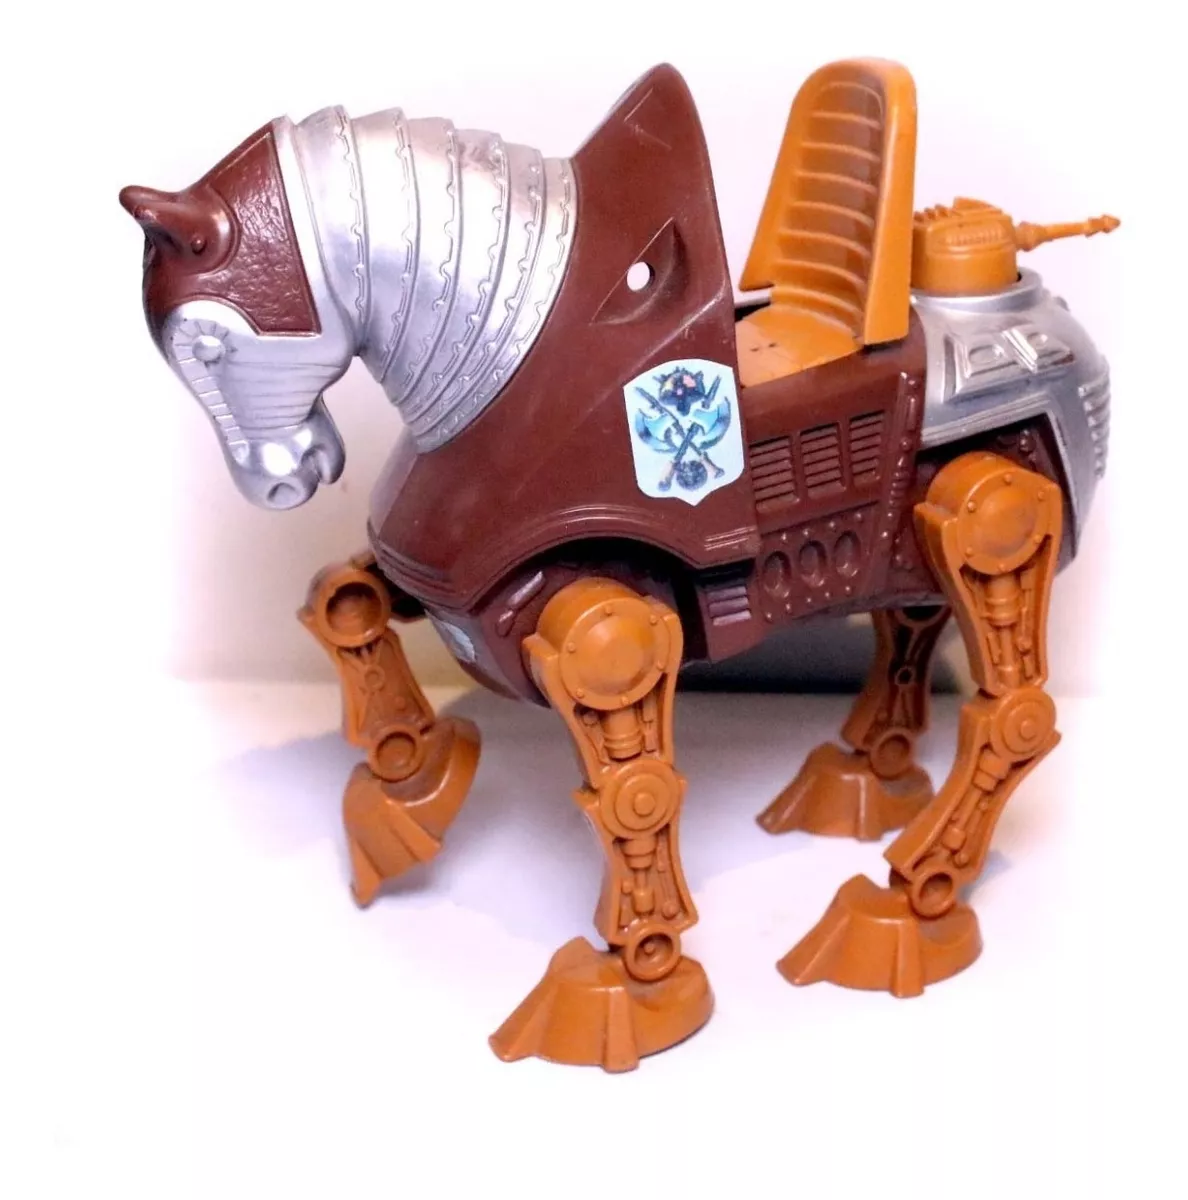 Boneco Cavalo Stridor Gladiador He-man Anos 80 Estrela Motu